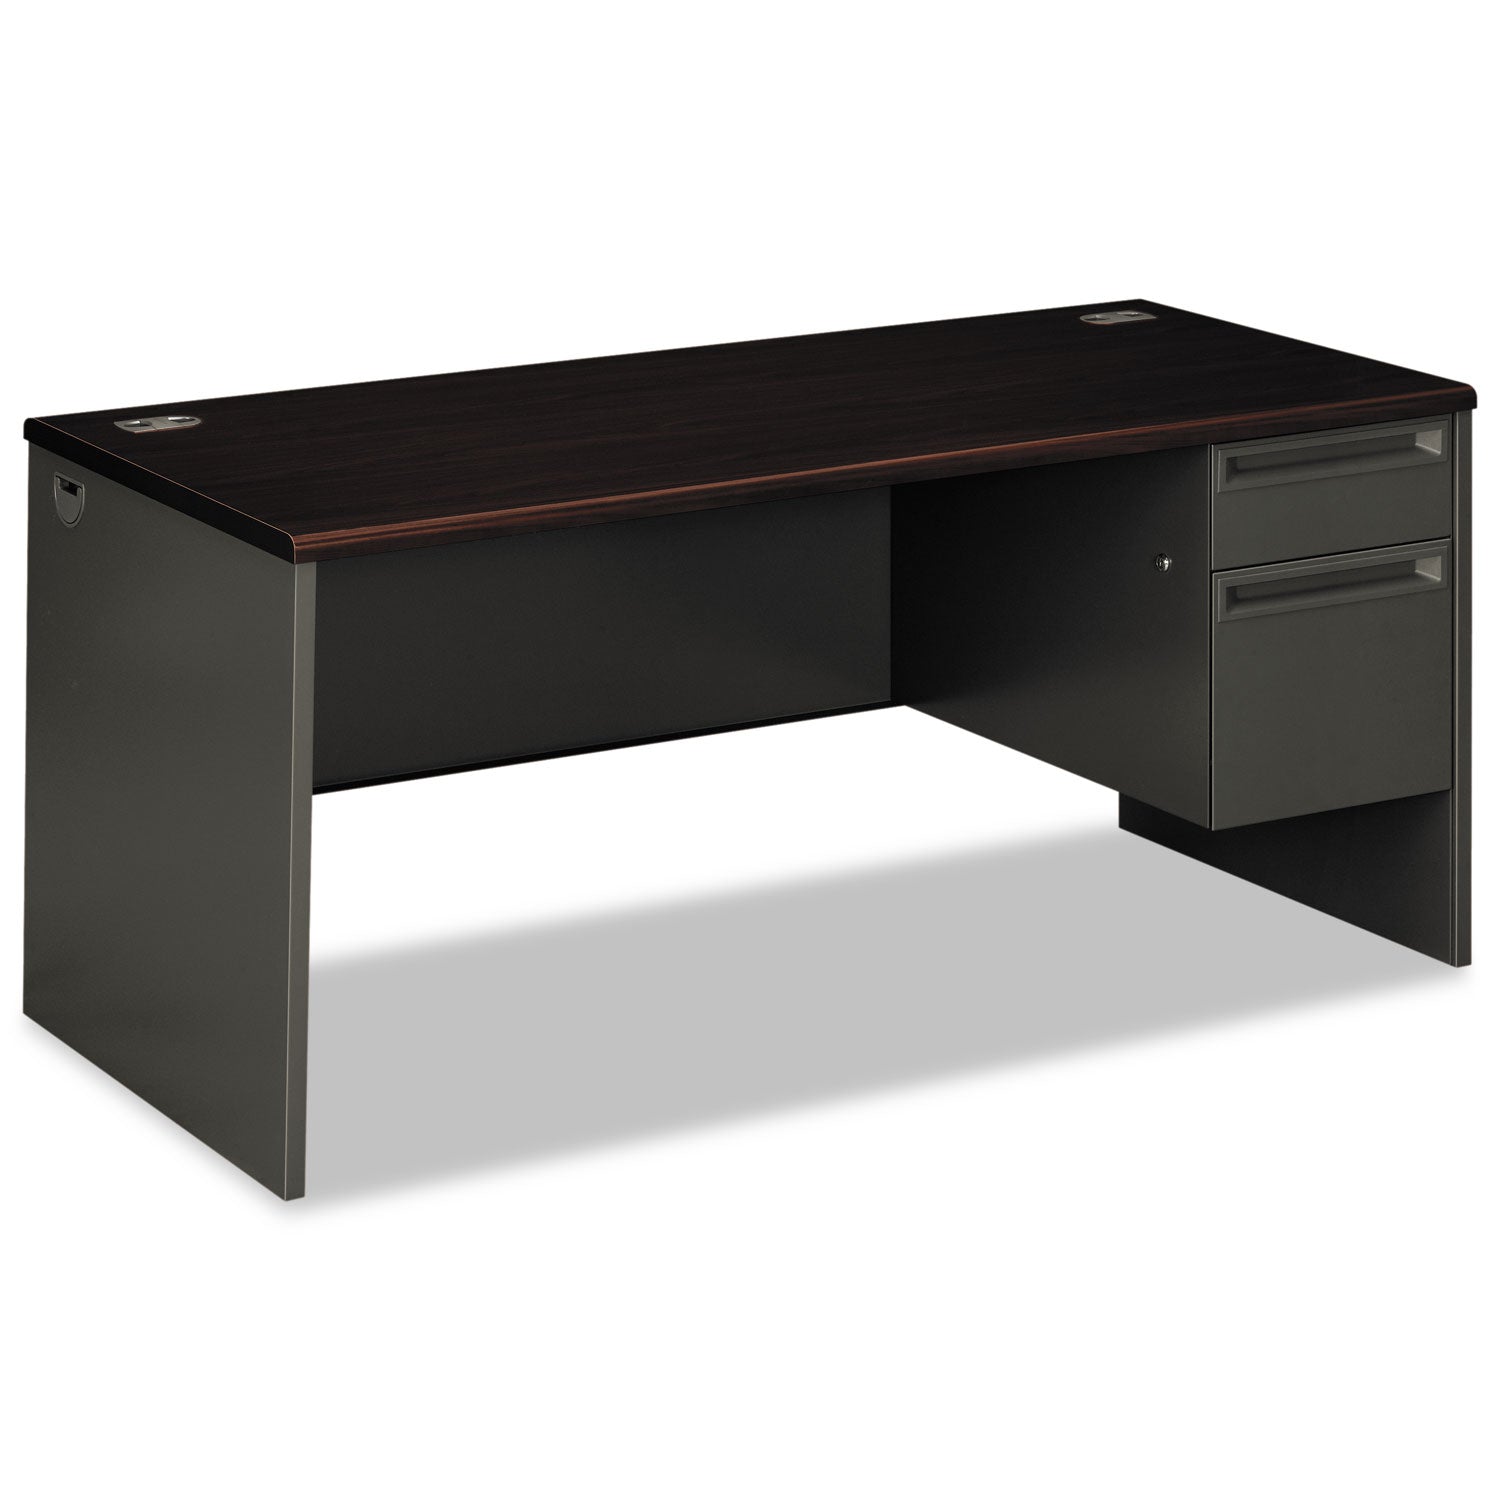 38000 Series Right Pedestal Desk, 66" x 30" x 29.5", Mahogany/Charcoal - 